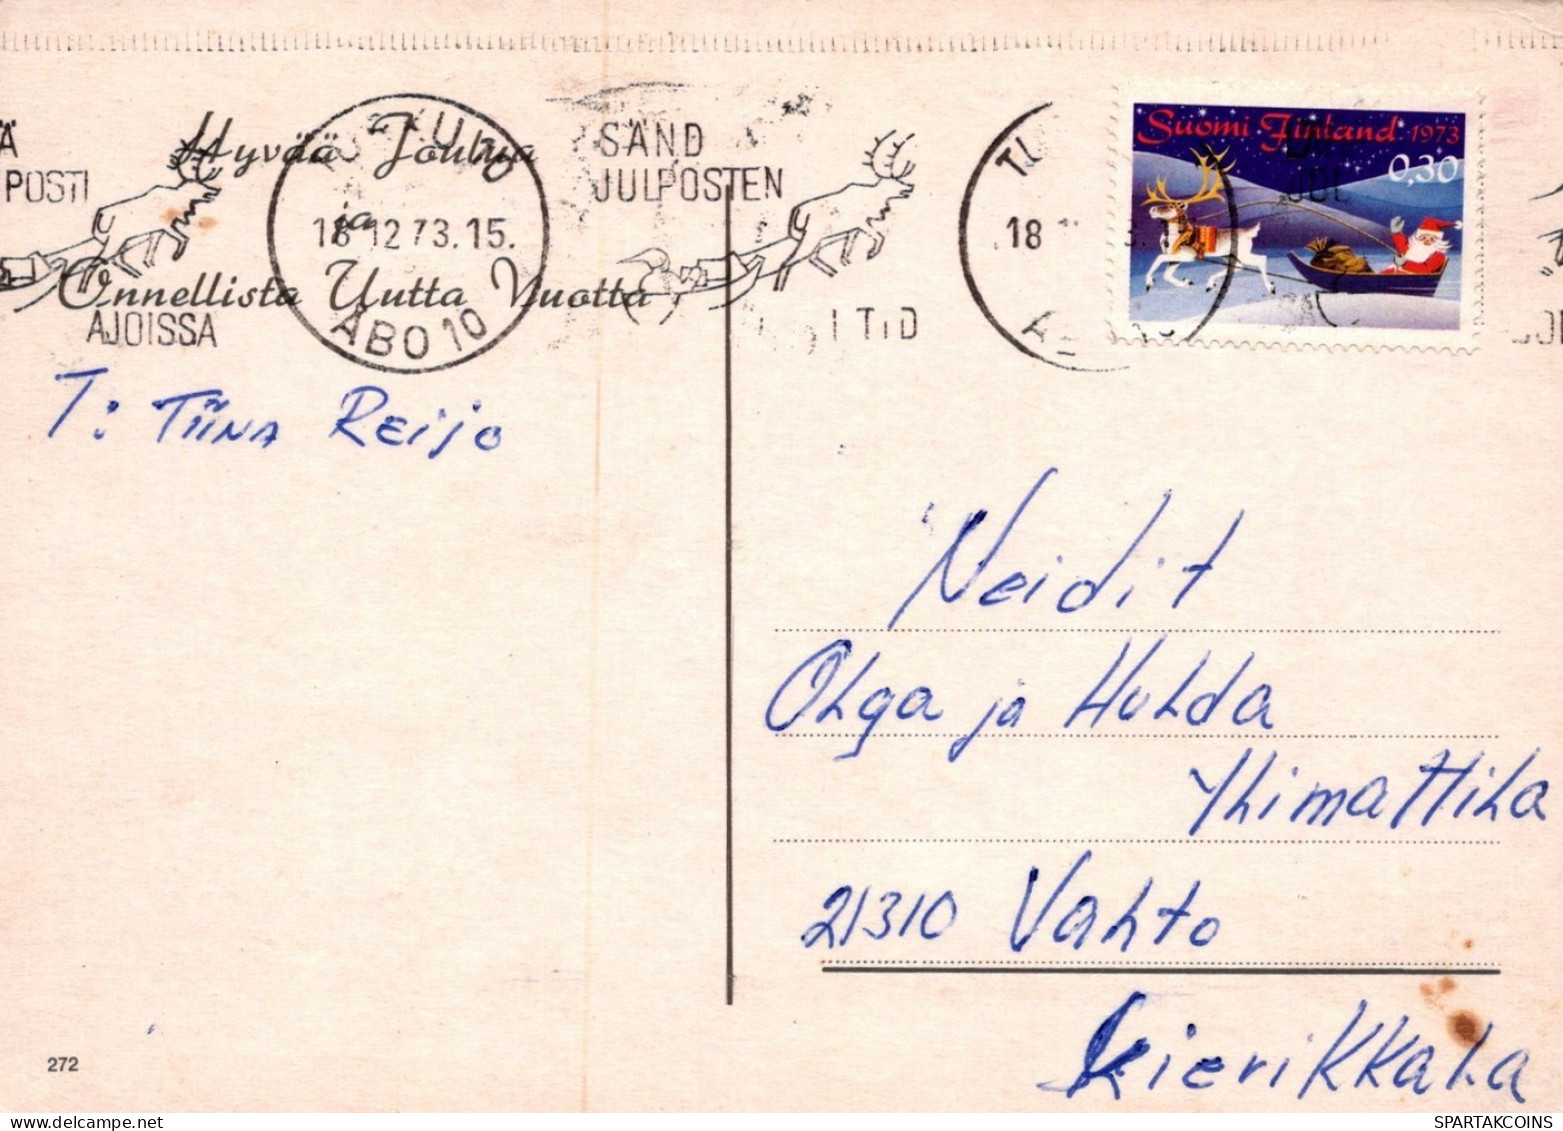 OISEAU Animaux Vintage Carte Postale CPSM #PAM924.A - Oiseaux